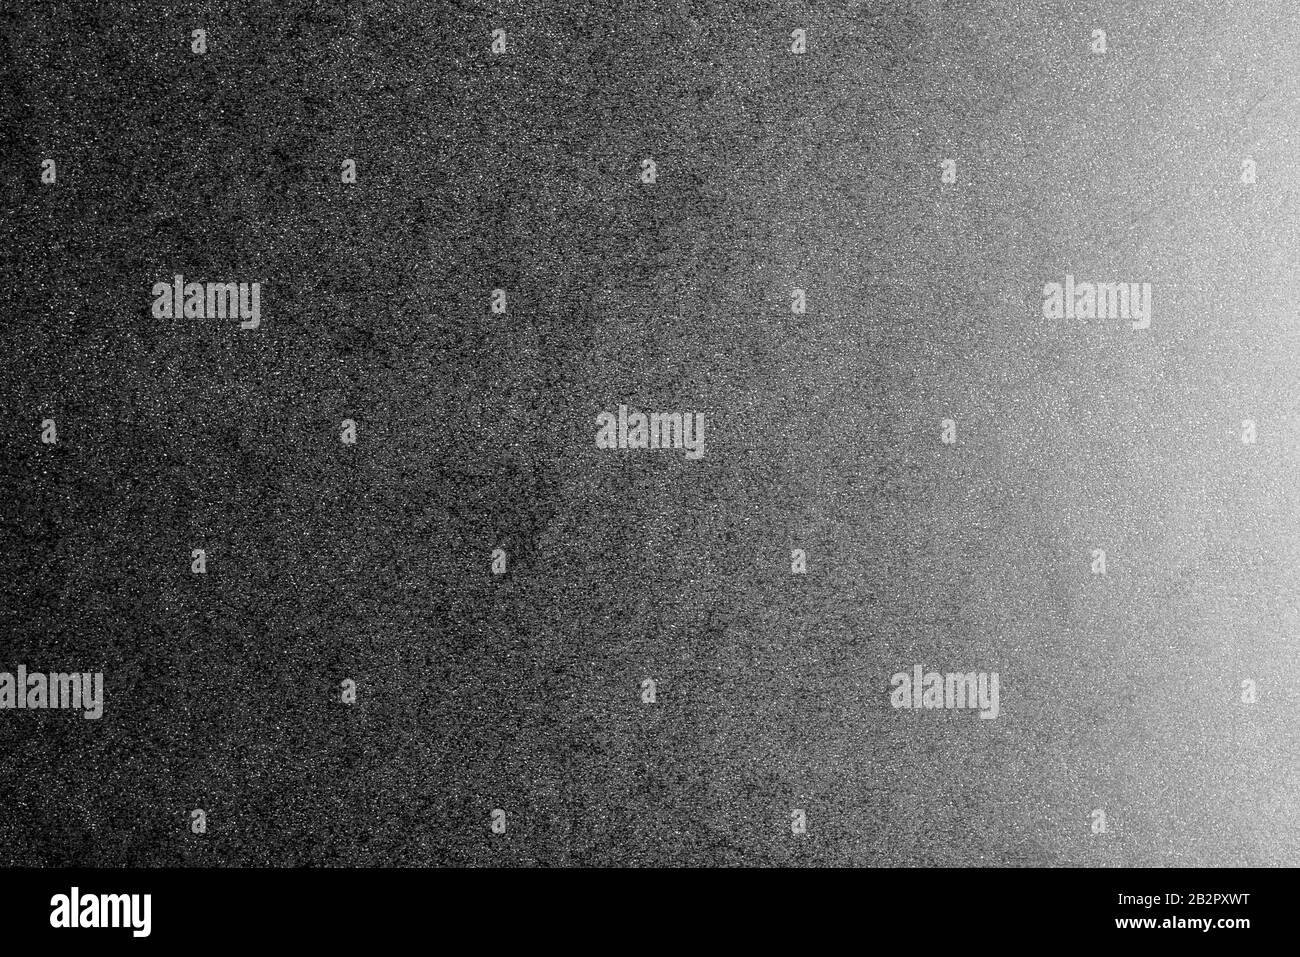 Fehlender und weißer Hintergrund aus echtem schwarzen Papier mit weißen Punkten, von rechts durch ein weiches Licht beleuchtet. Stockfoto